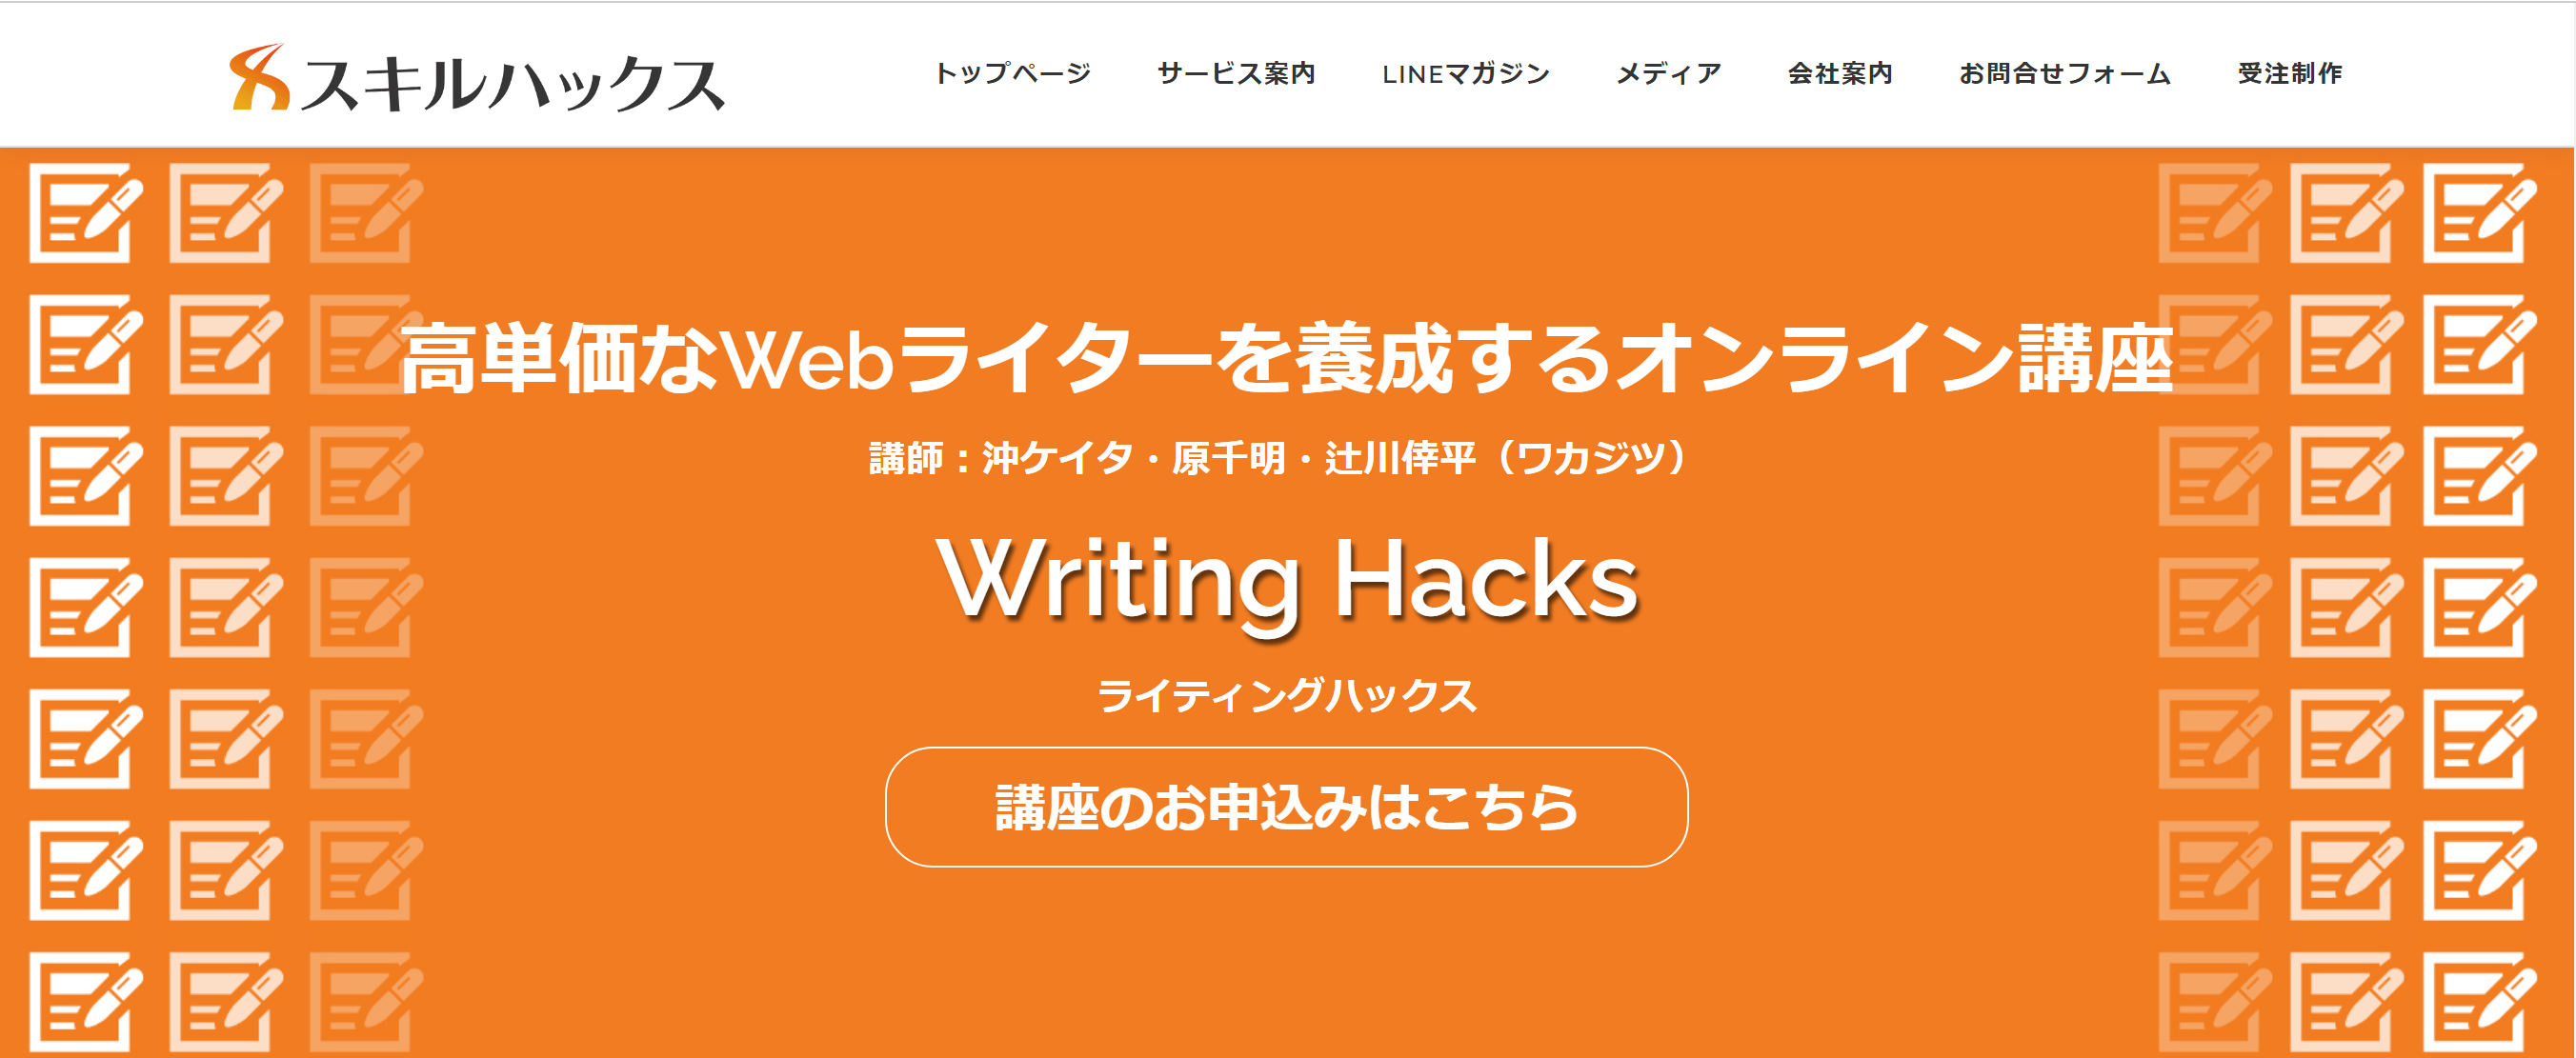 writinghacks講座